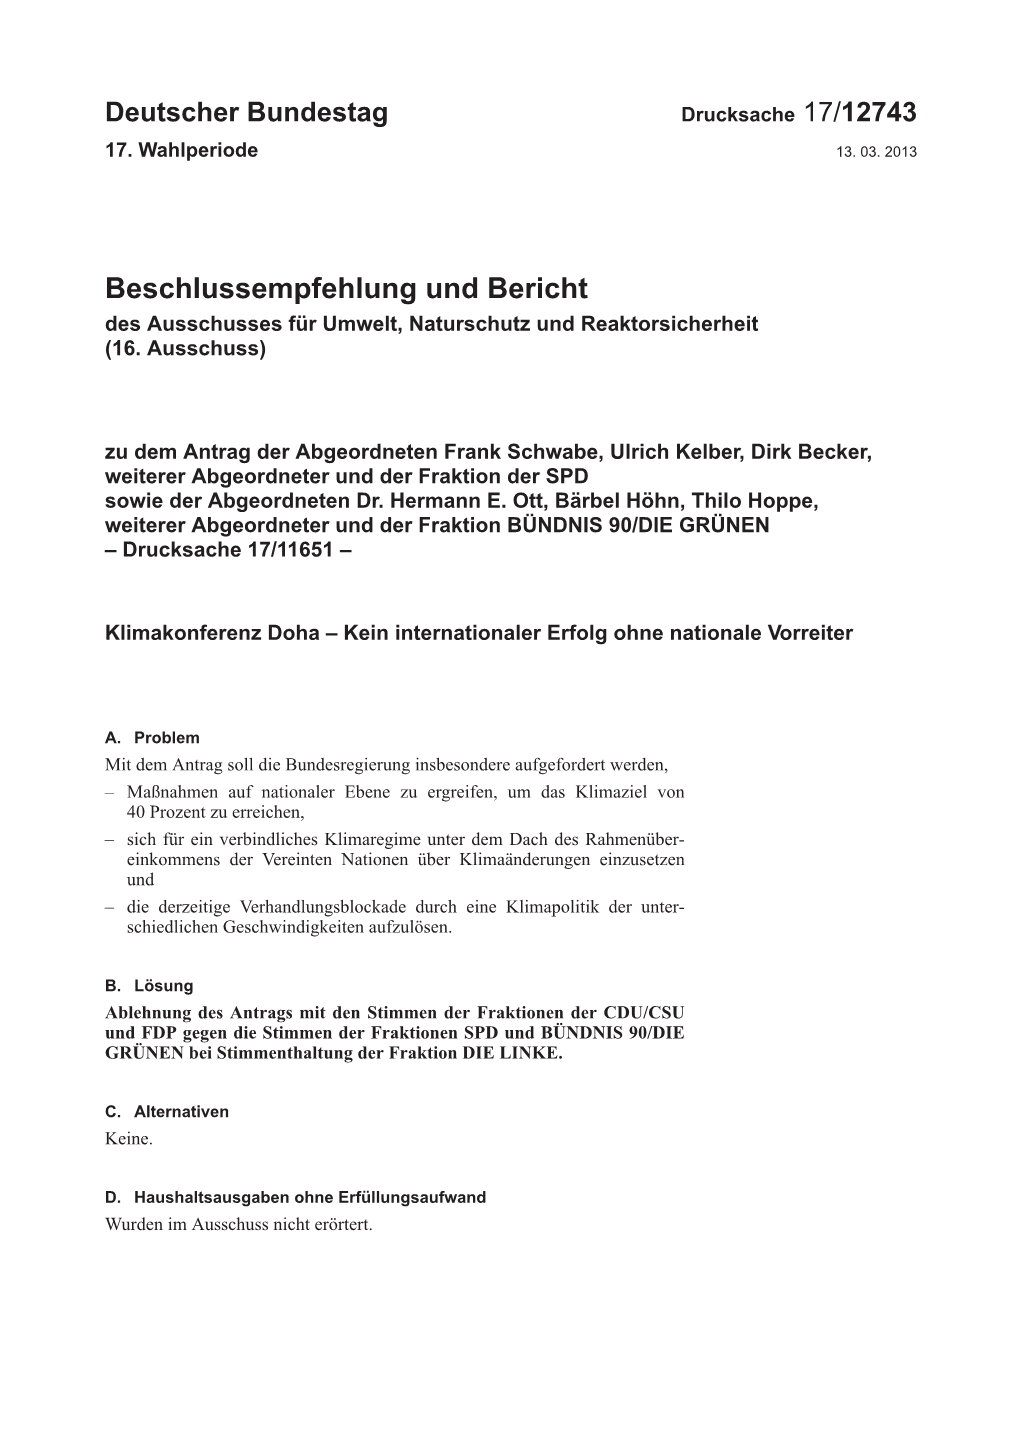 Beschlussempfehlung Und Bericht Des Ausschusses Für Umwelt, Naturschutz Und Reaktorsicherheit (16